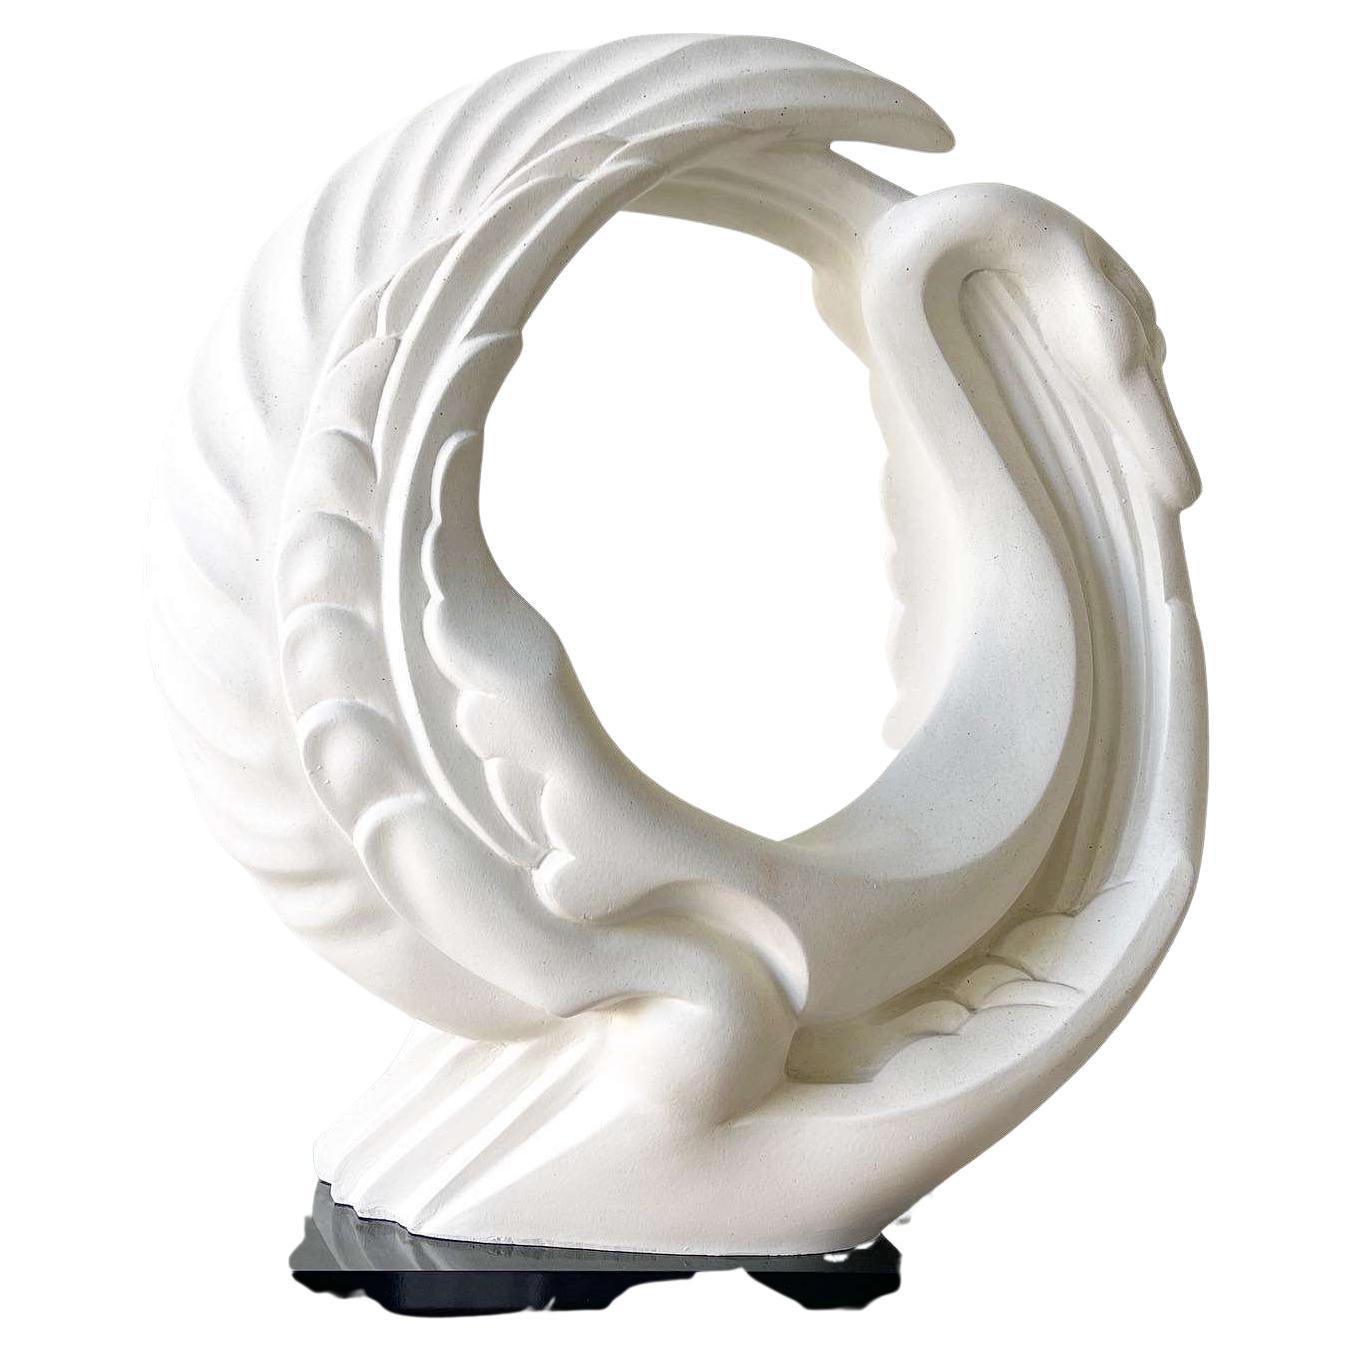 Vintage Mid Century Modern Brass Swan Sculpture by Dara International